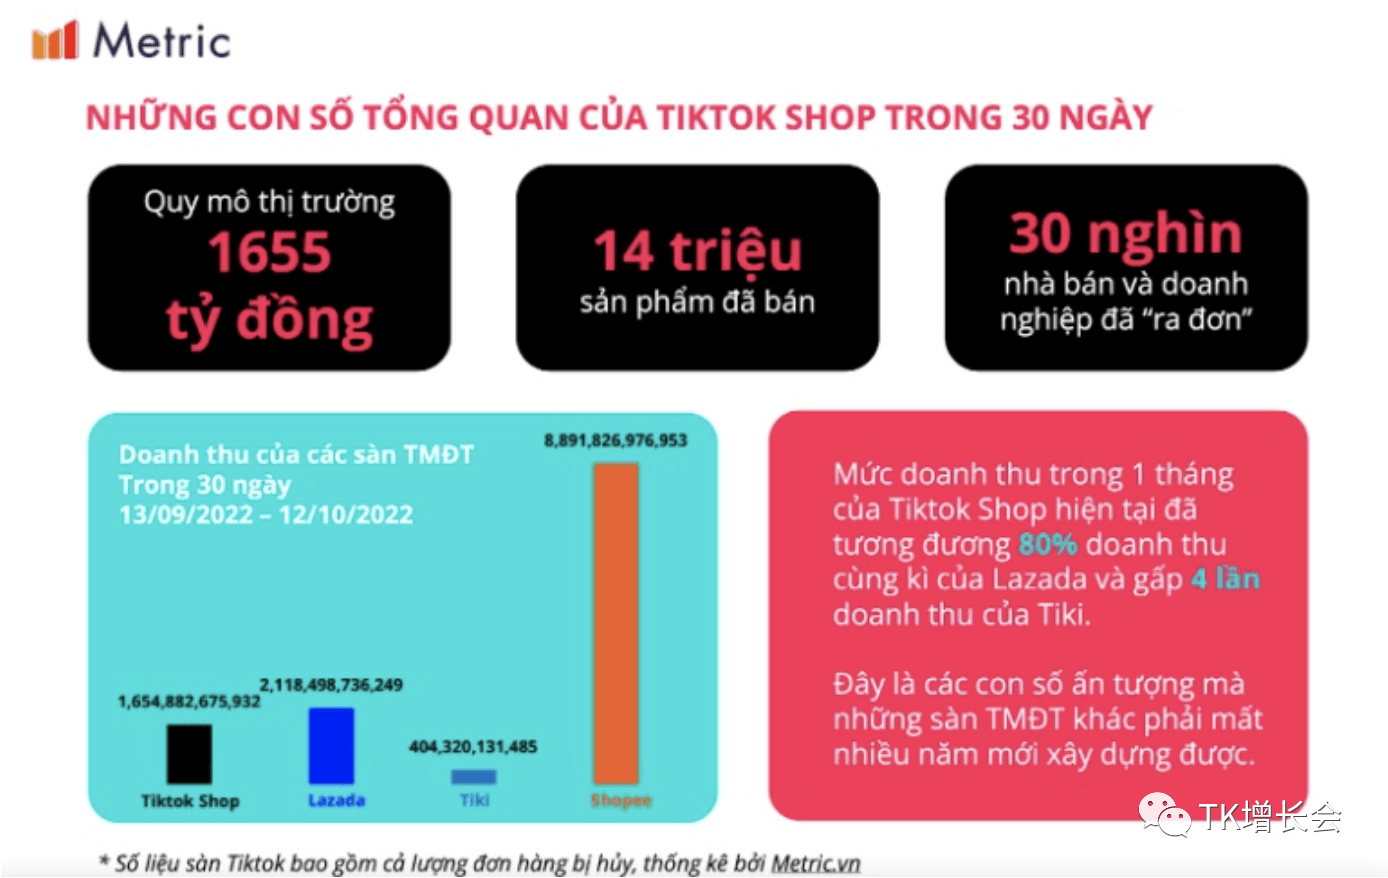 TikTok Shop越南第一季度营收超2.5亿美元，增速惊人